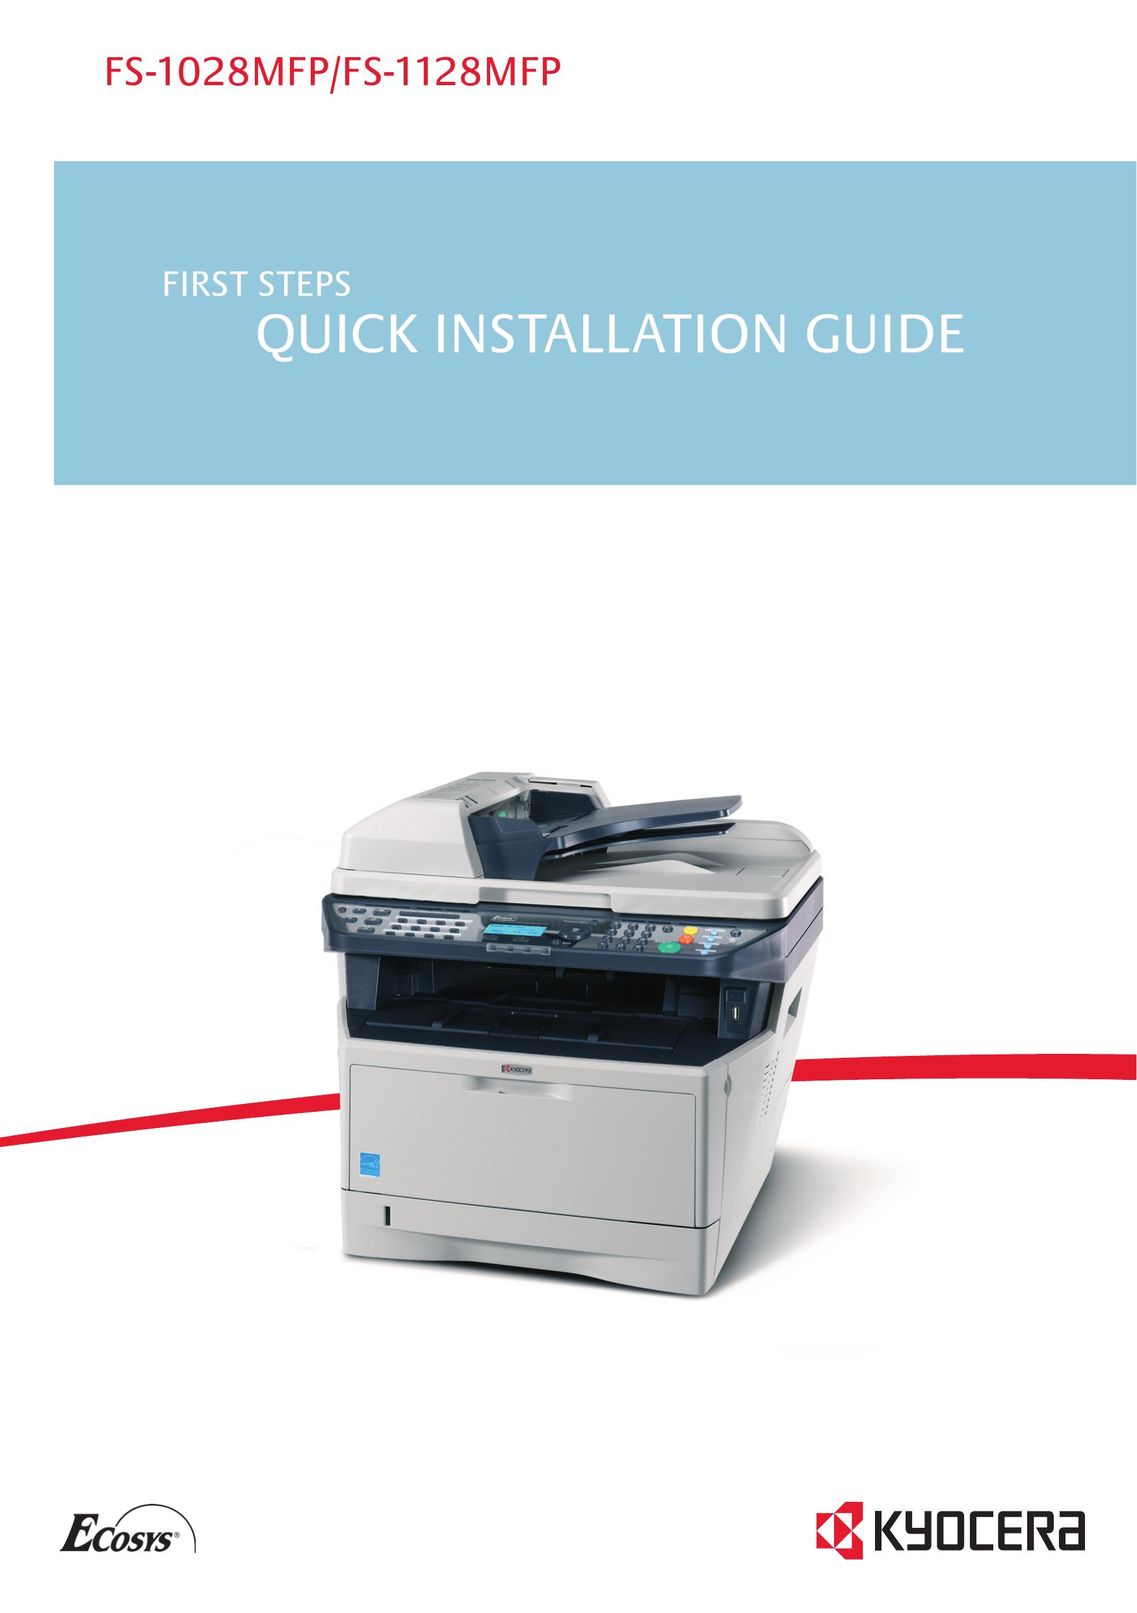 Kyocera FS-1028MFP All in One Printer User Manual